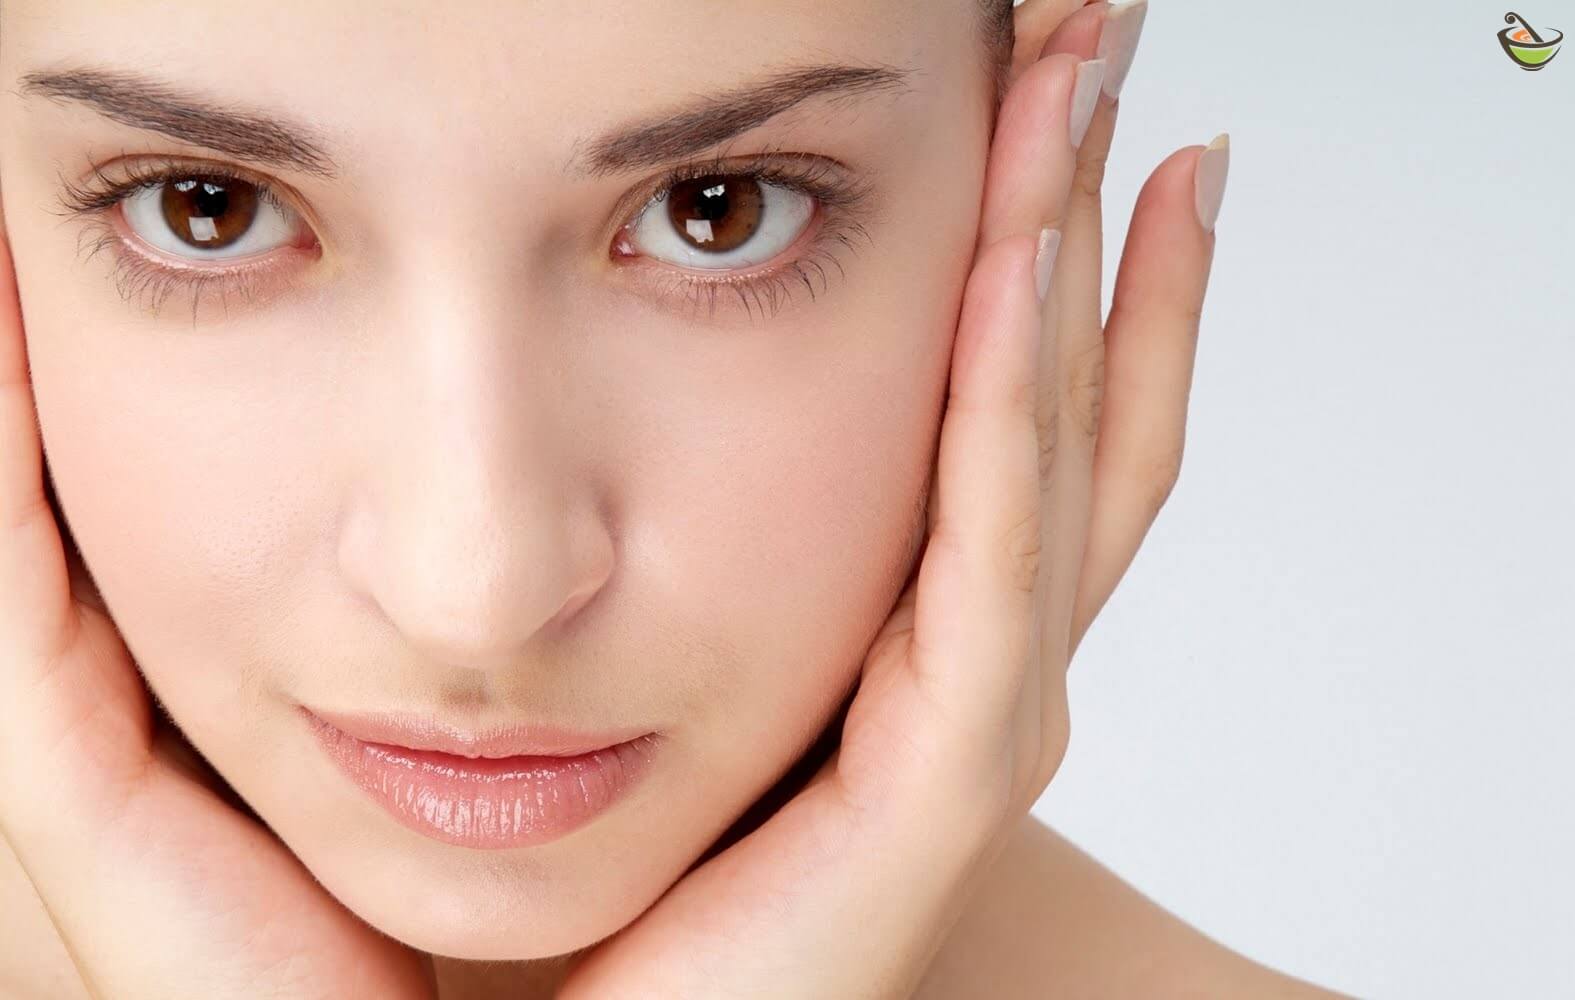 وصفات طبيعية لتبييض الوجه والتخلص من المناطق الداكنة وأهم النصائح للحفاظ على نضارة الوجه